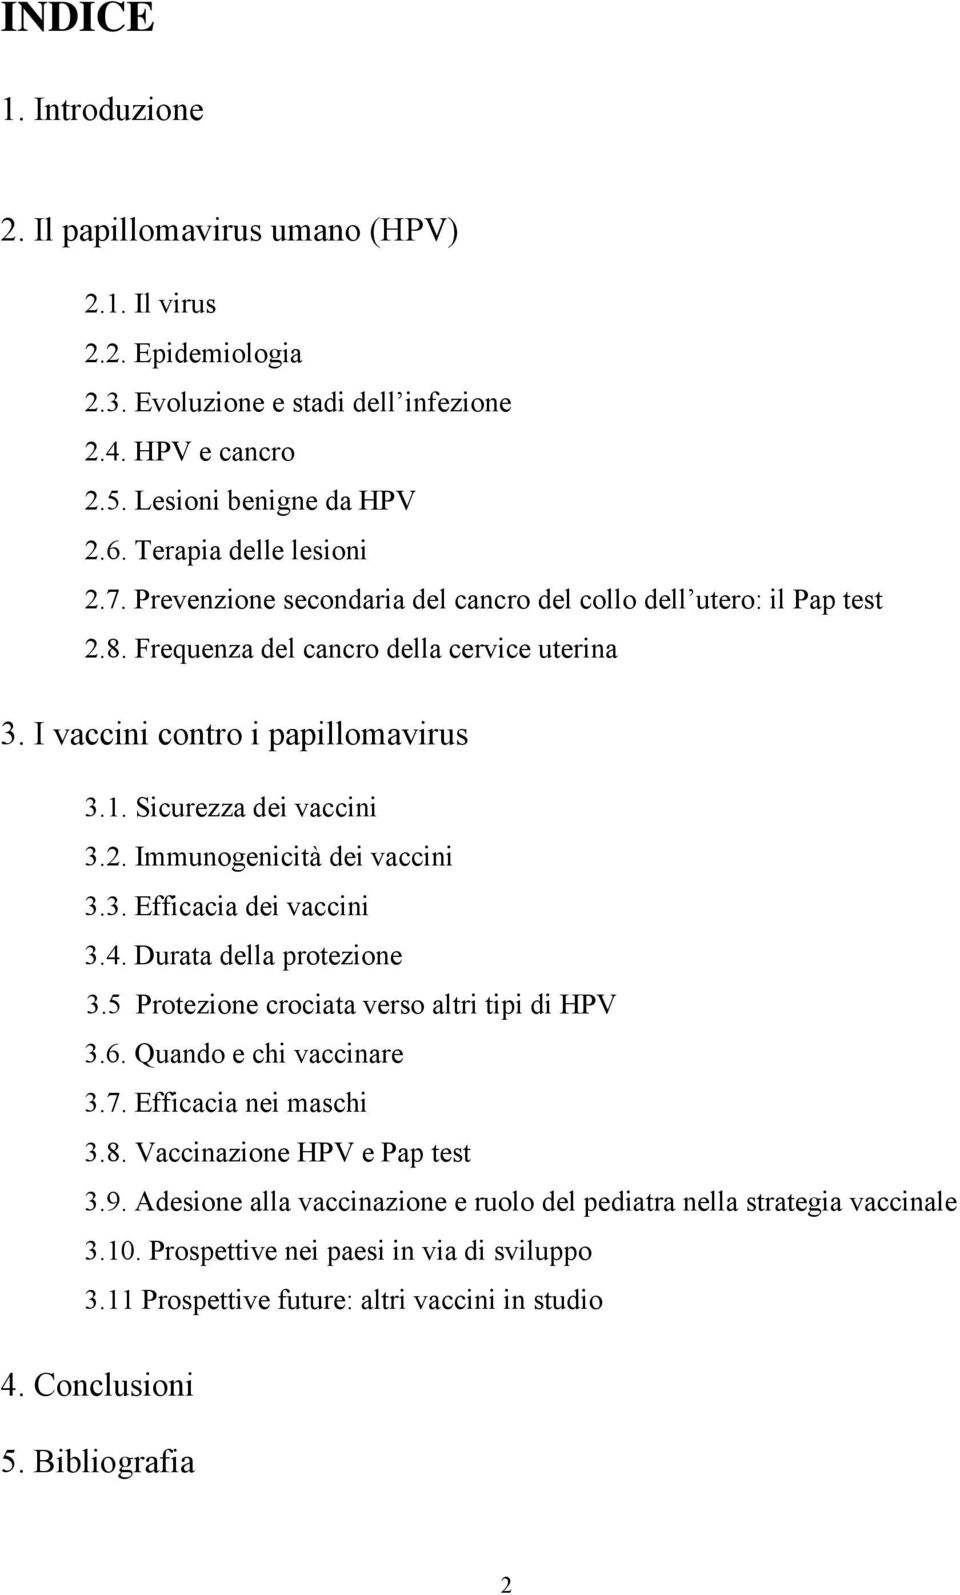 Sicurezza dei vaccini 3.2. Immunogenicità dei vaccini 3.3. Efficacia dei vaccini 3.4. Durata della protezione 3.5 Protezione crociata verso altri tipi di HPV 3.6. Quando e chi vaccinare 3.7.